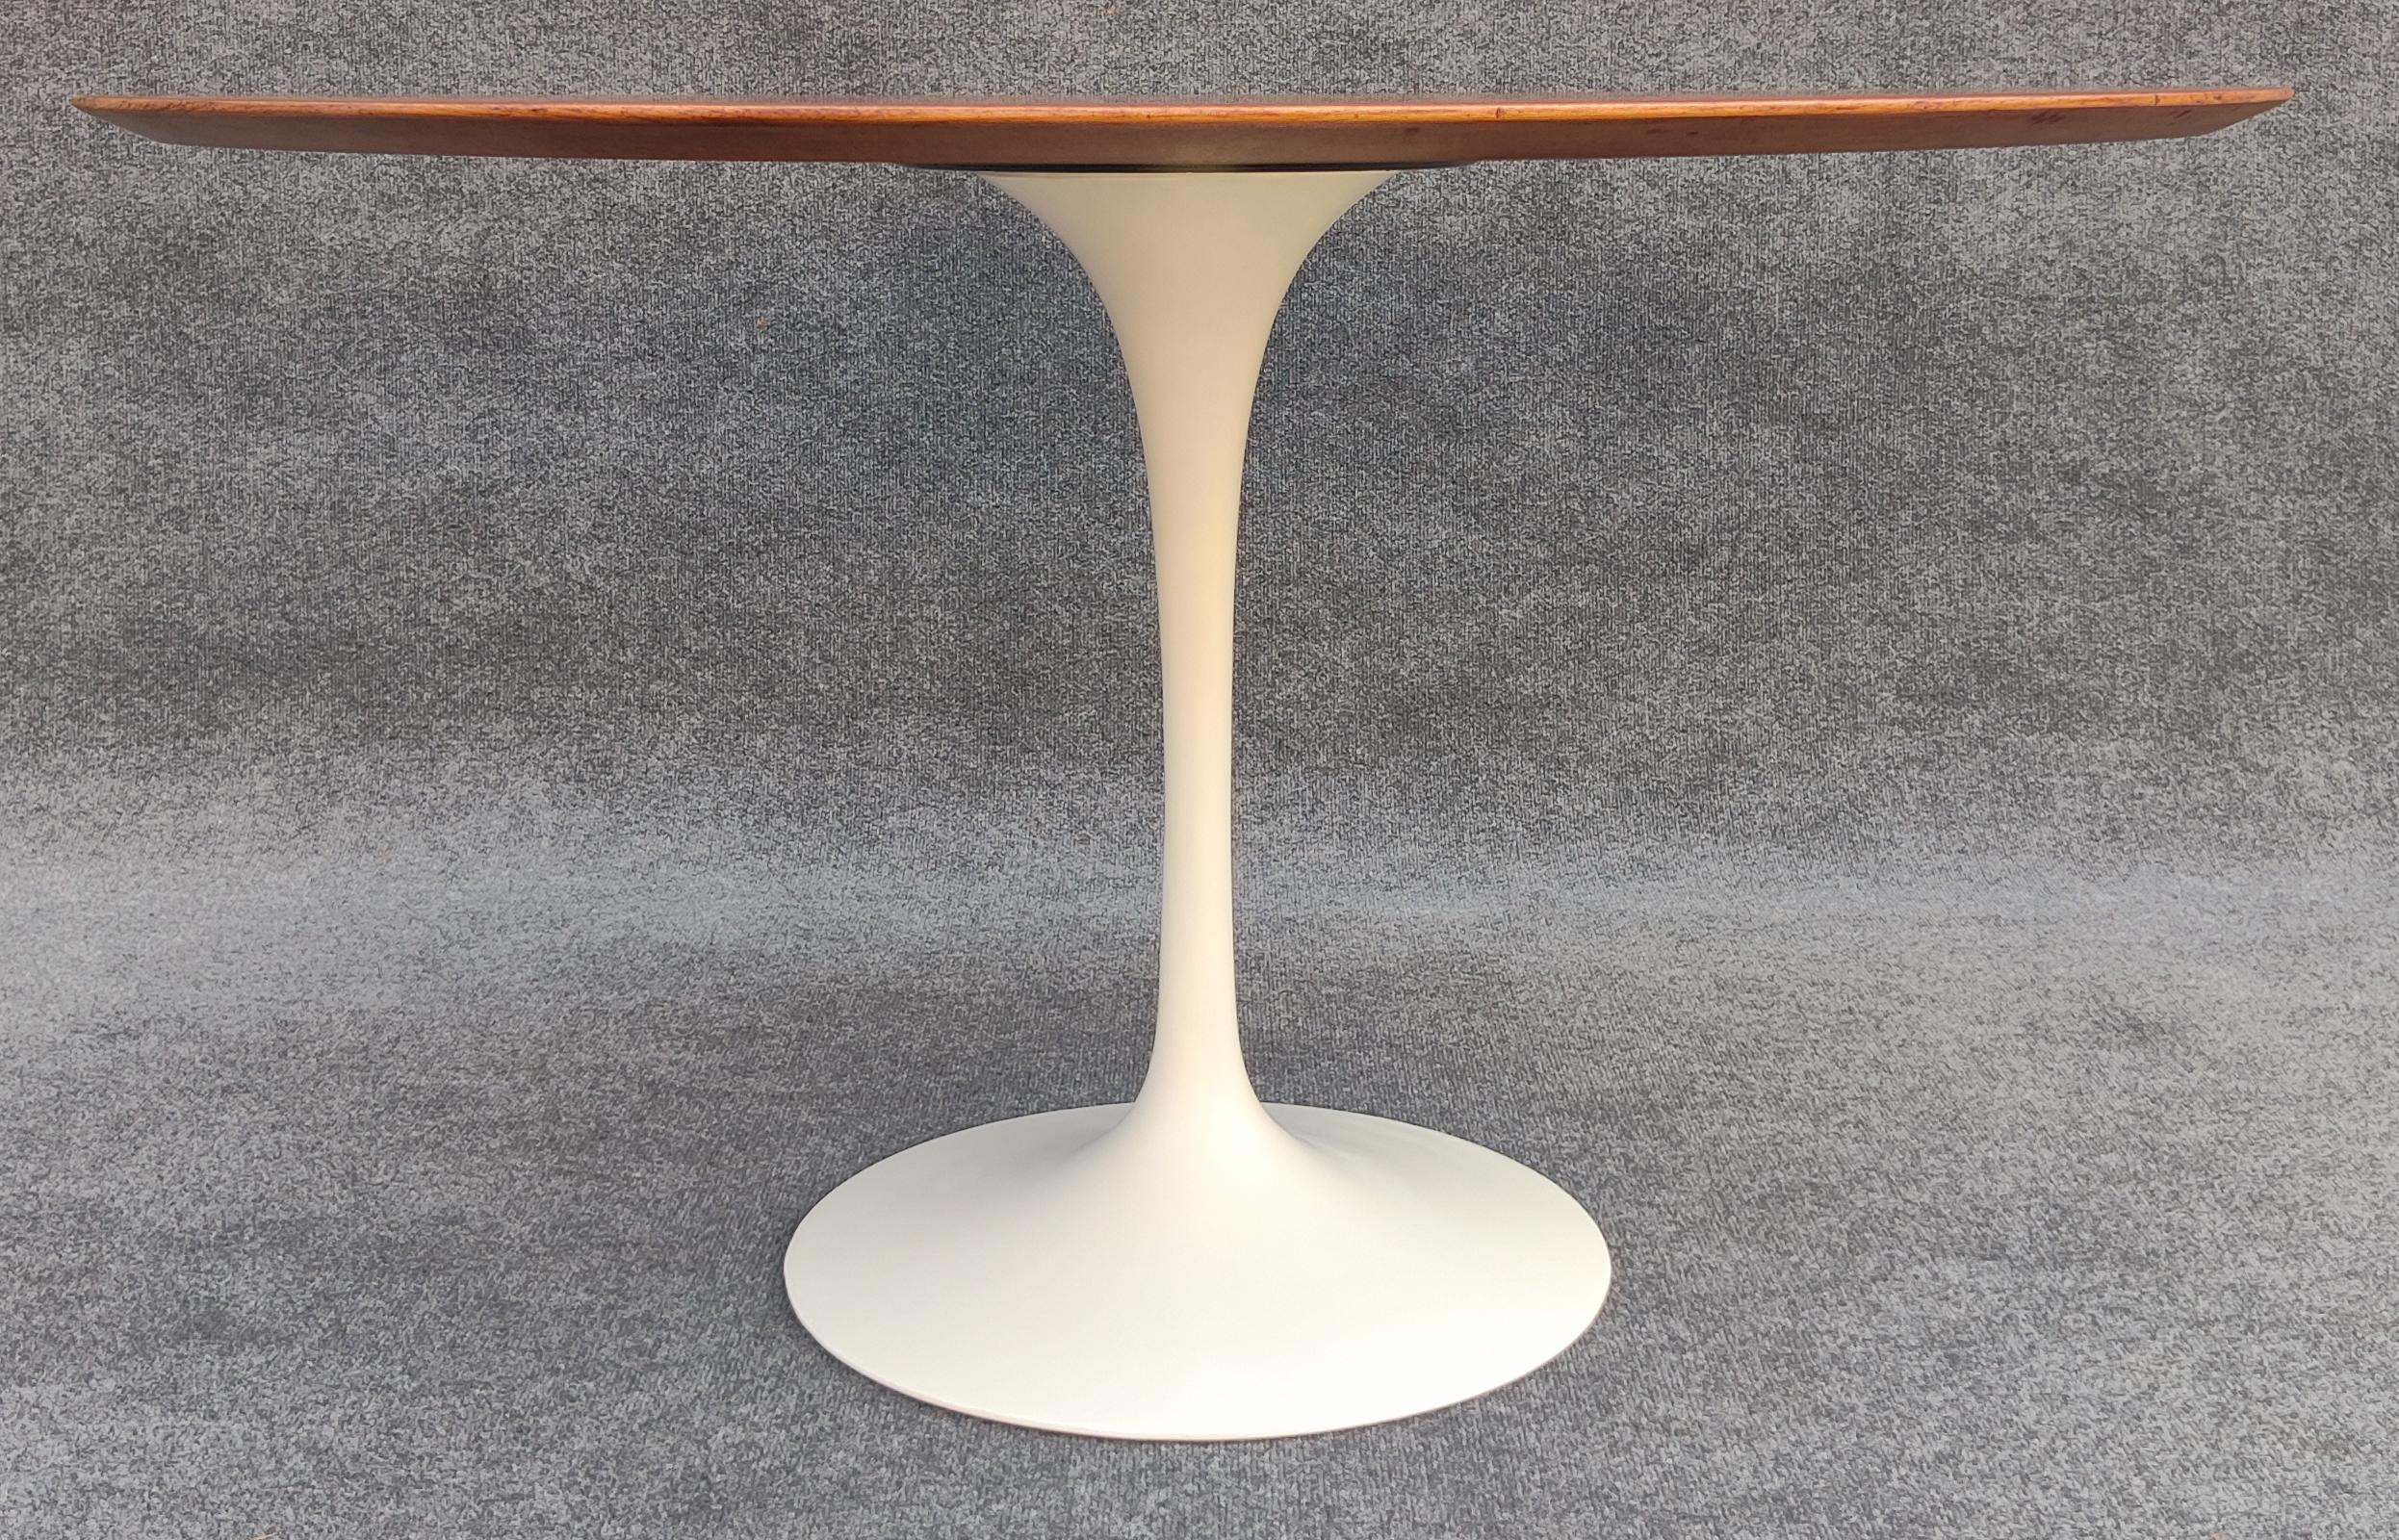 Restored Early Eero Saarinen Knoll Tulip Dining Table Teak Top Iron Base 48